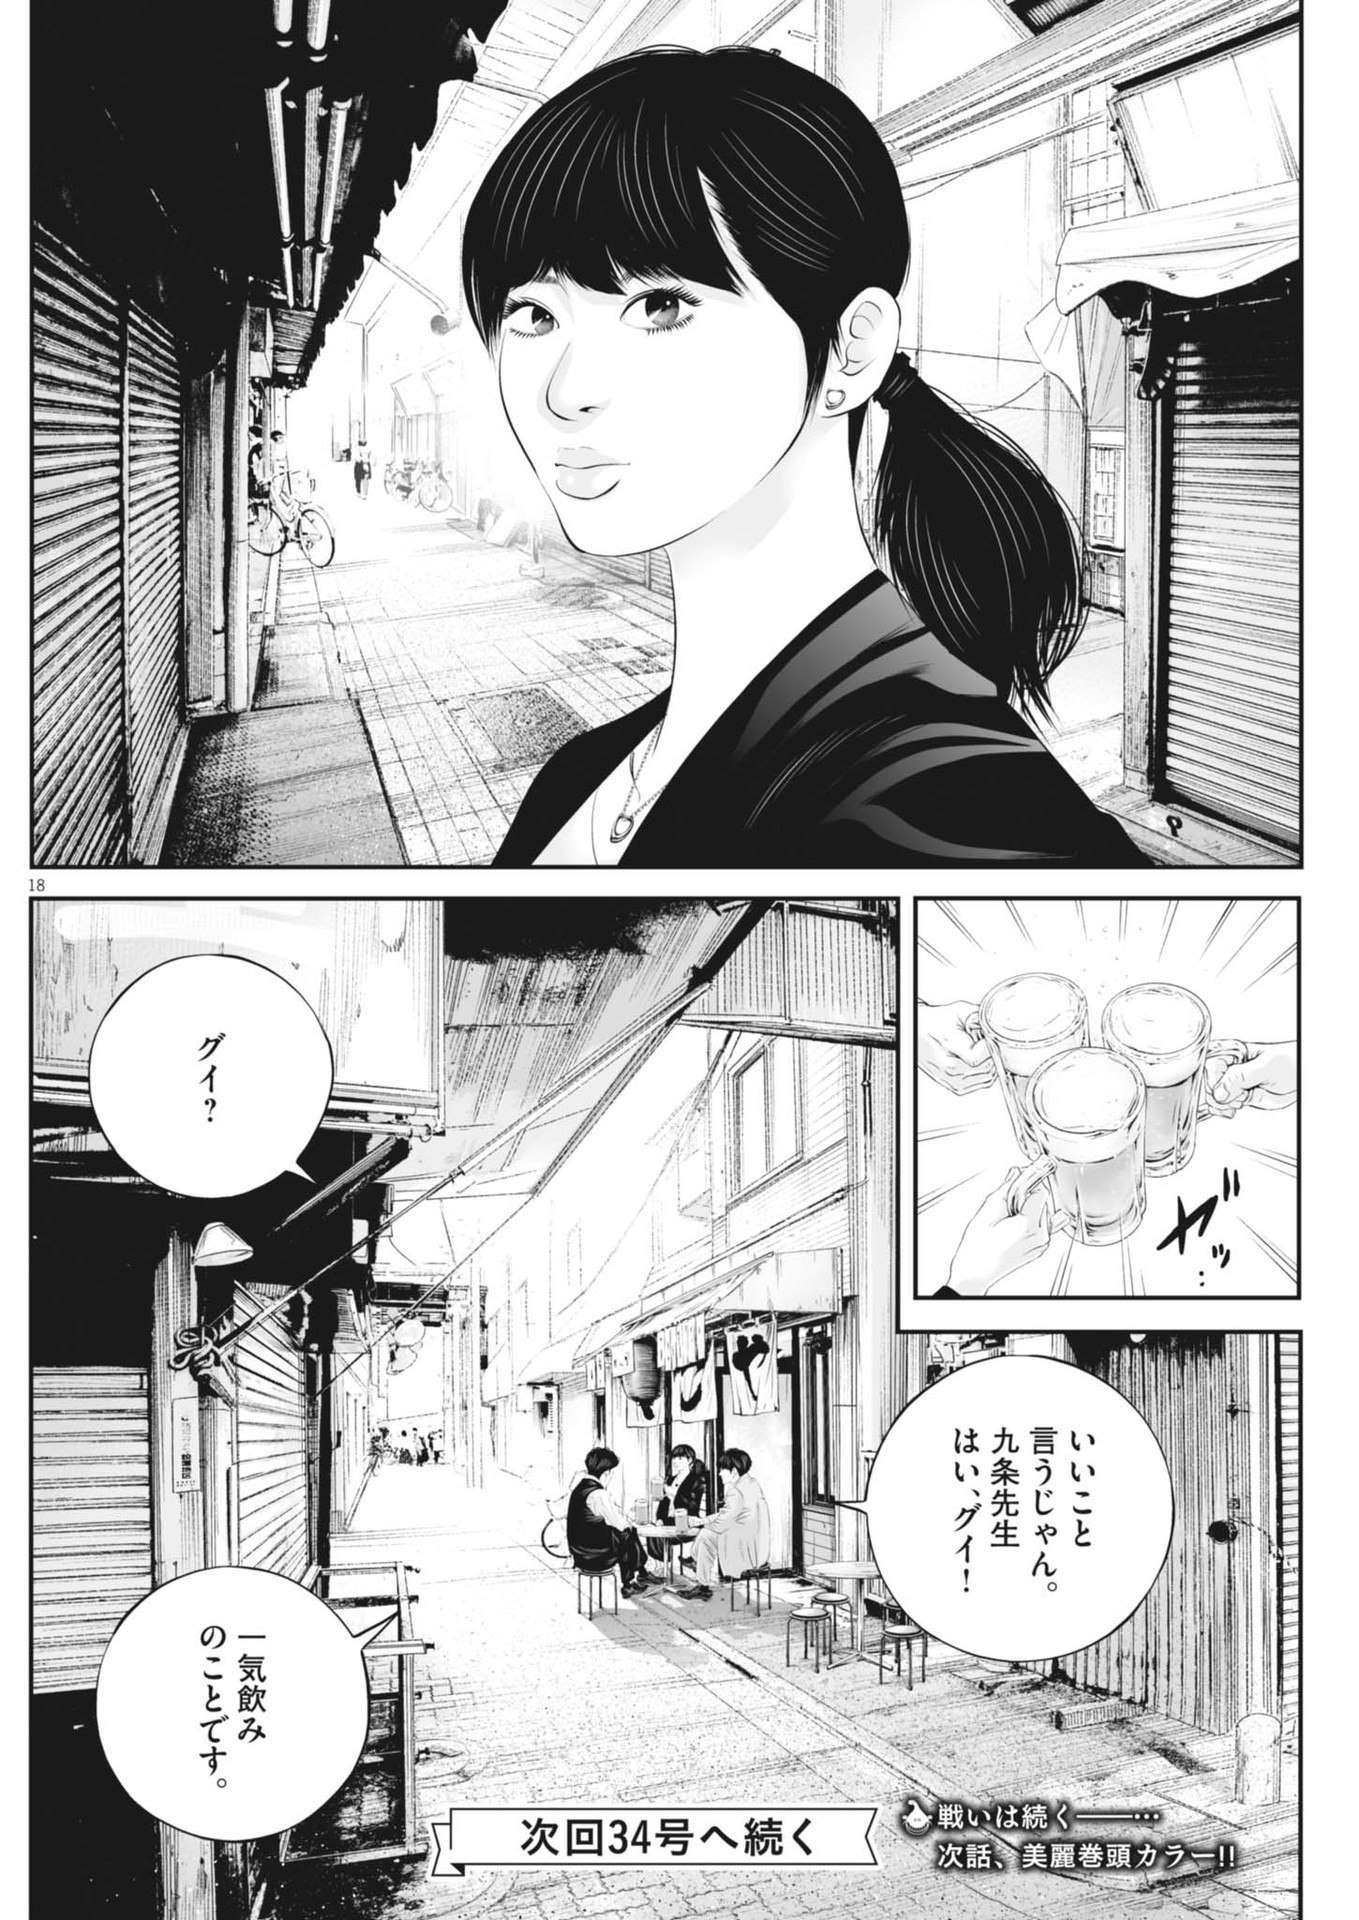 Kujou no Taizai - Chapter 104 - Page 18